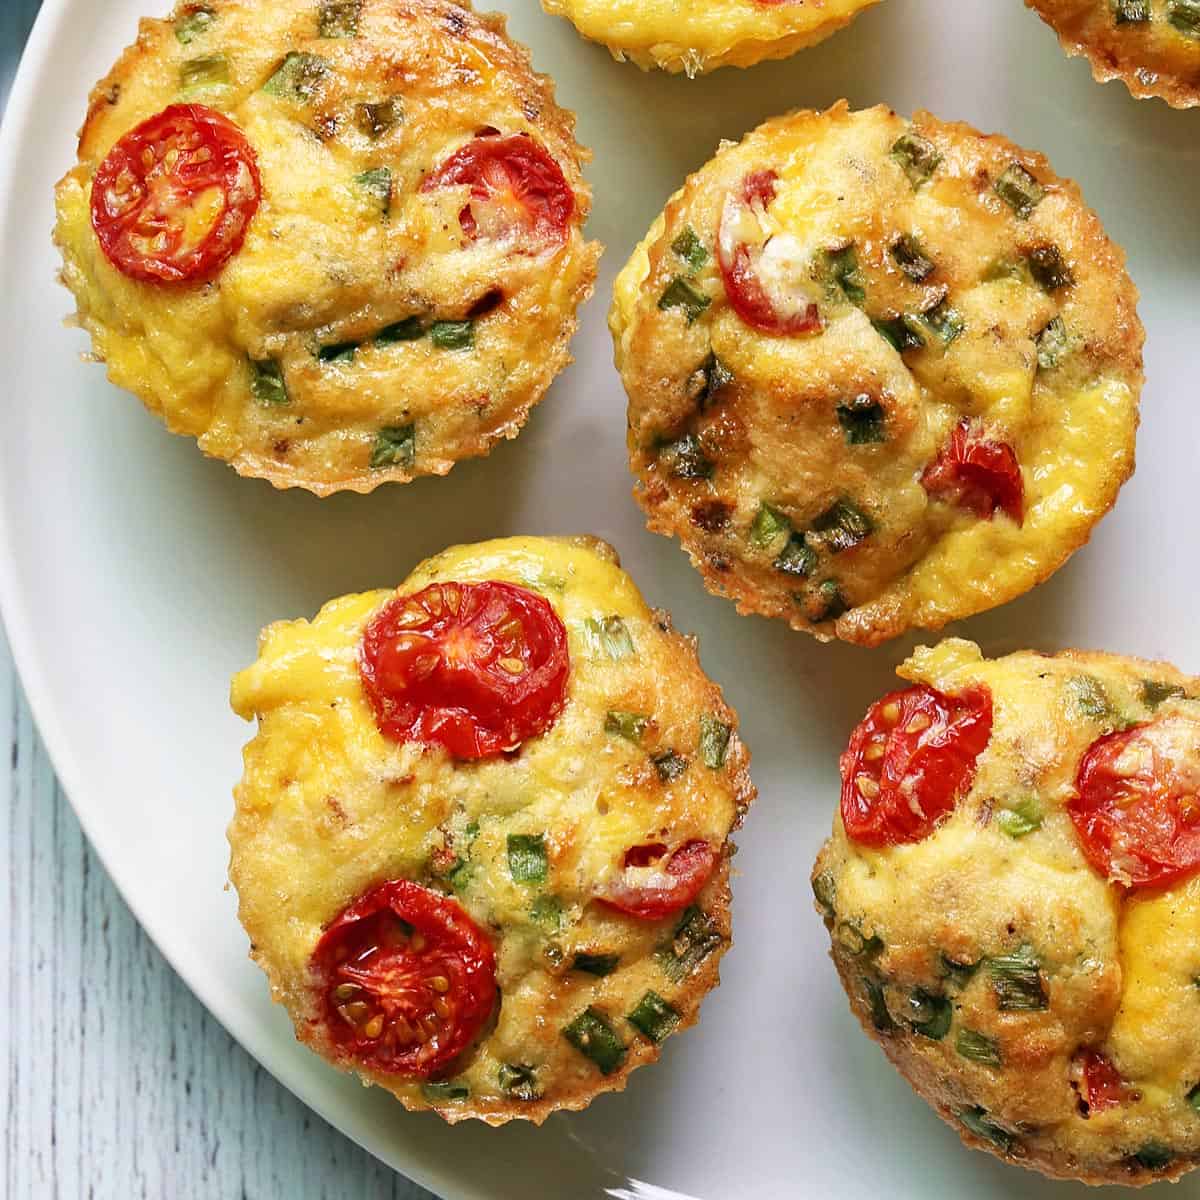 https://healthyrecipesblogs.com/wp-content/uploads/2022/07/egg-muffins-featured-2022.jpg